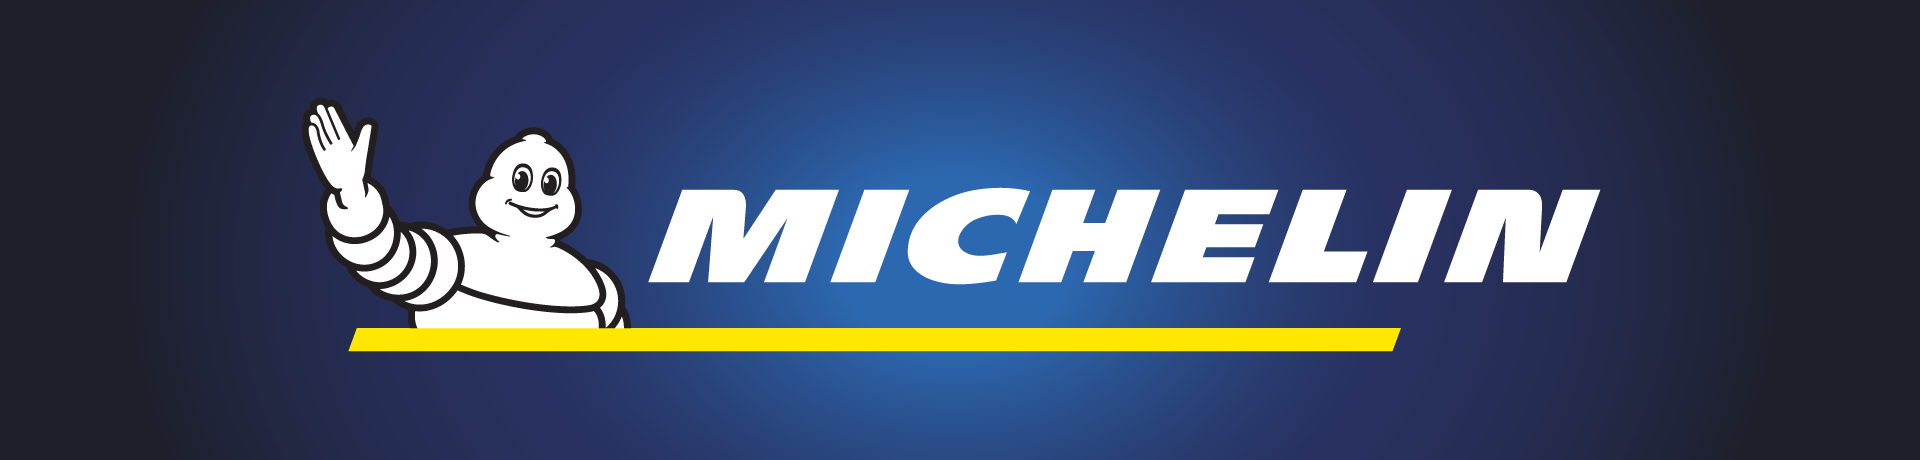 MICHELIN-Banner_BG